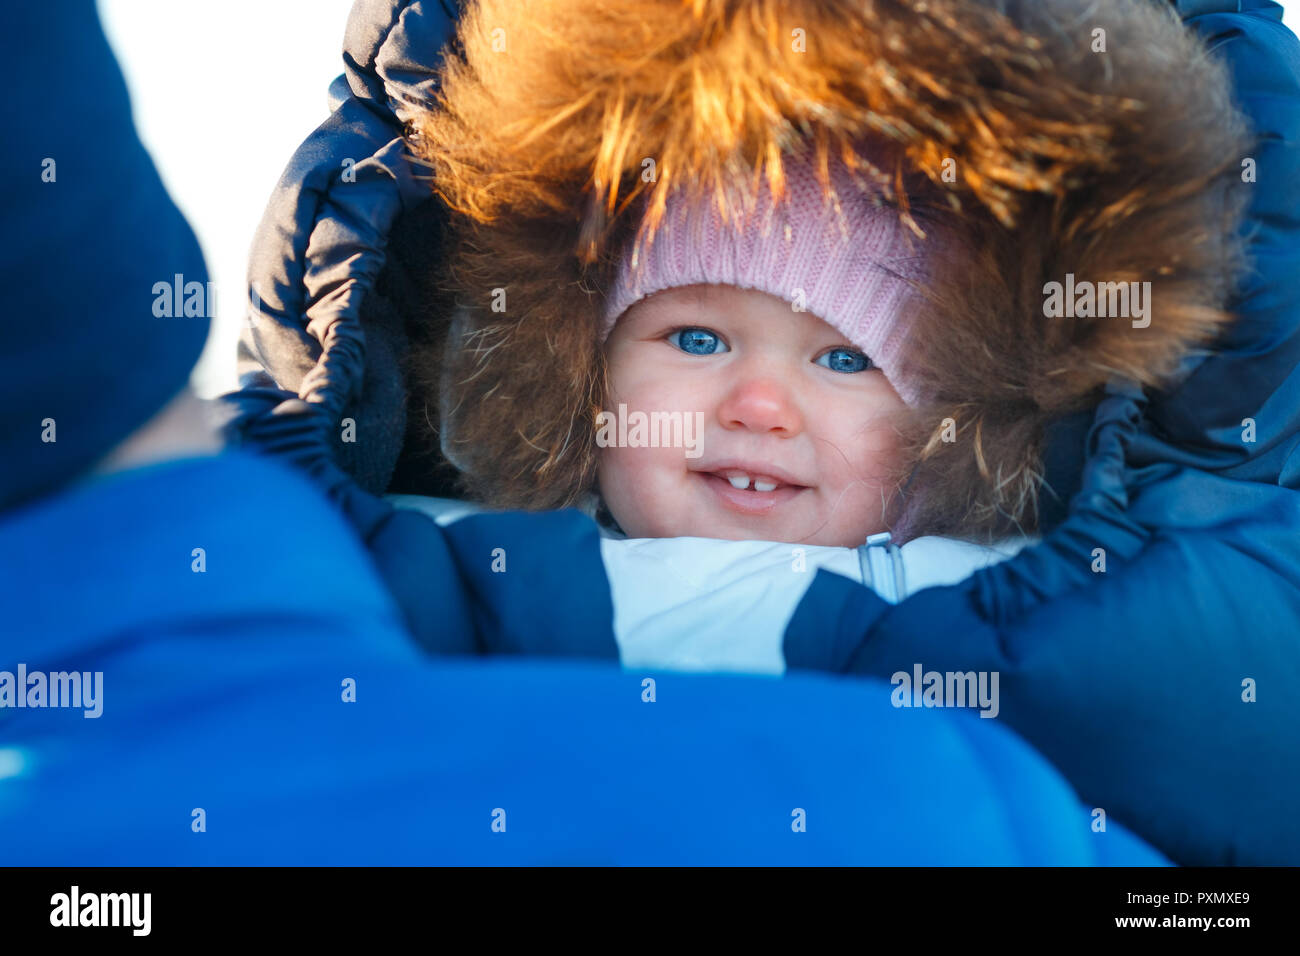 Close Up retrato de dulce niña recién nacida envuelta en sobres de invierno Foto de stock